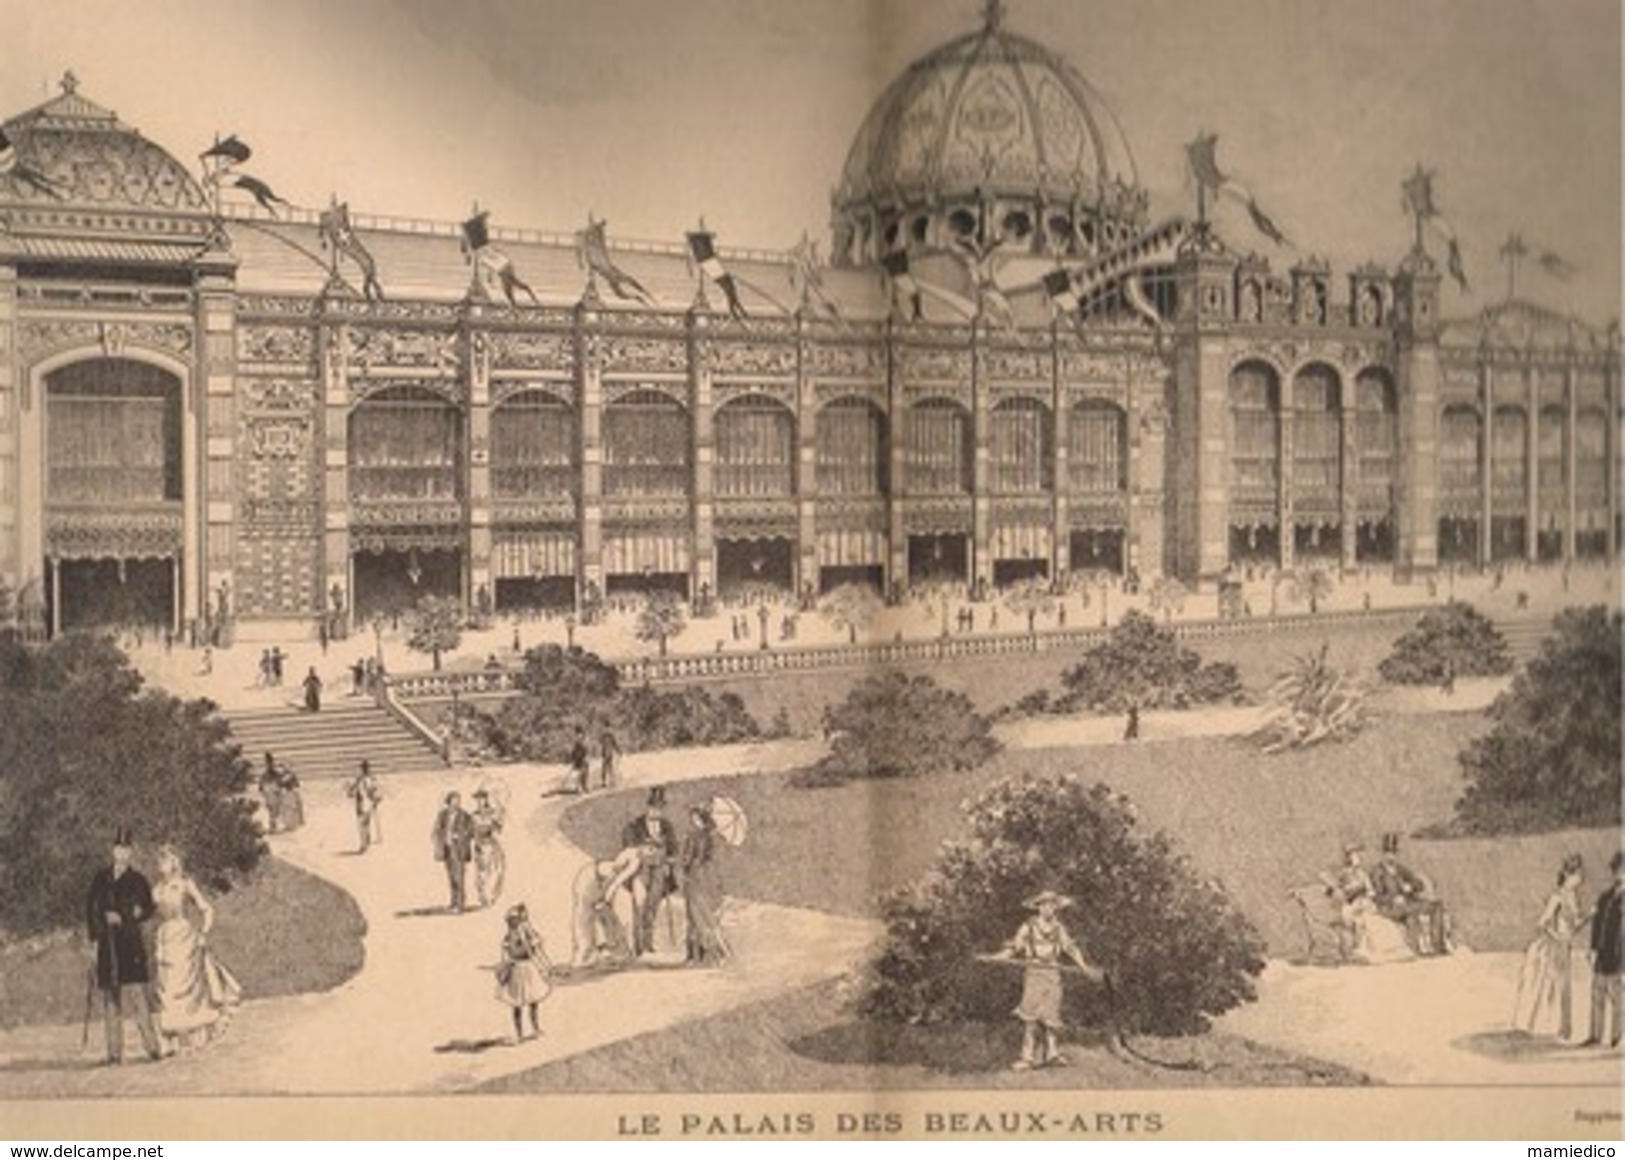 1889 L'Exposition Universelle 3 REVUES n°8, 11 et 13. Très belles et nombreuses illustrations.